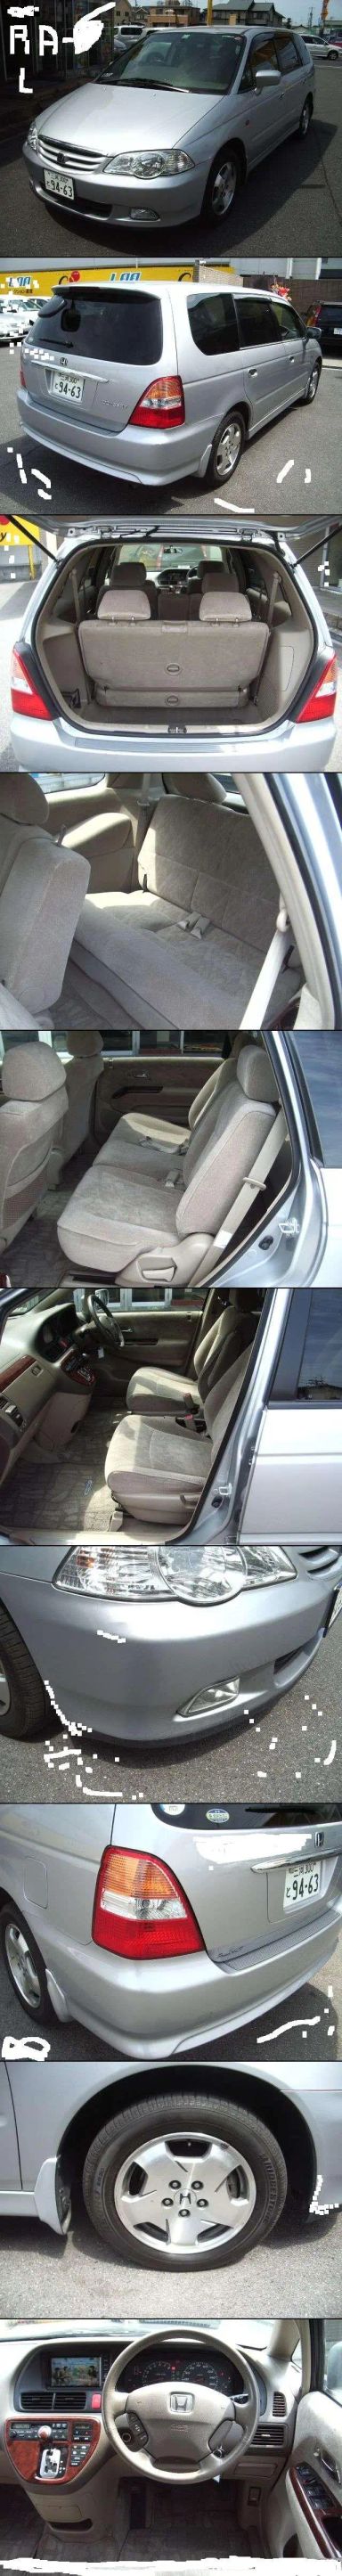 Honda Odyssey 2000   |   29.08.2005.